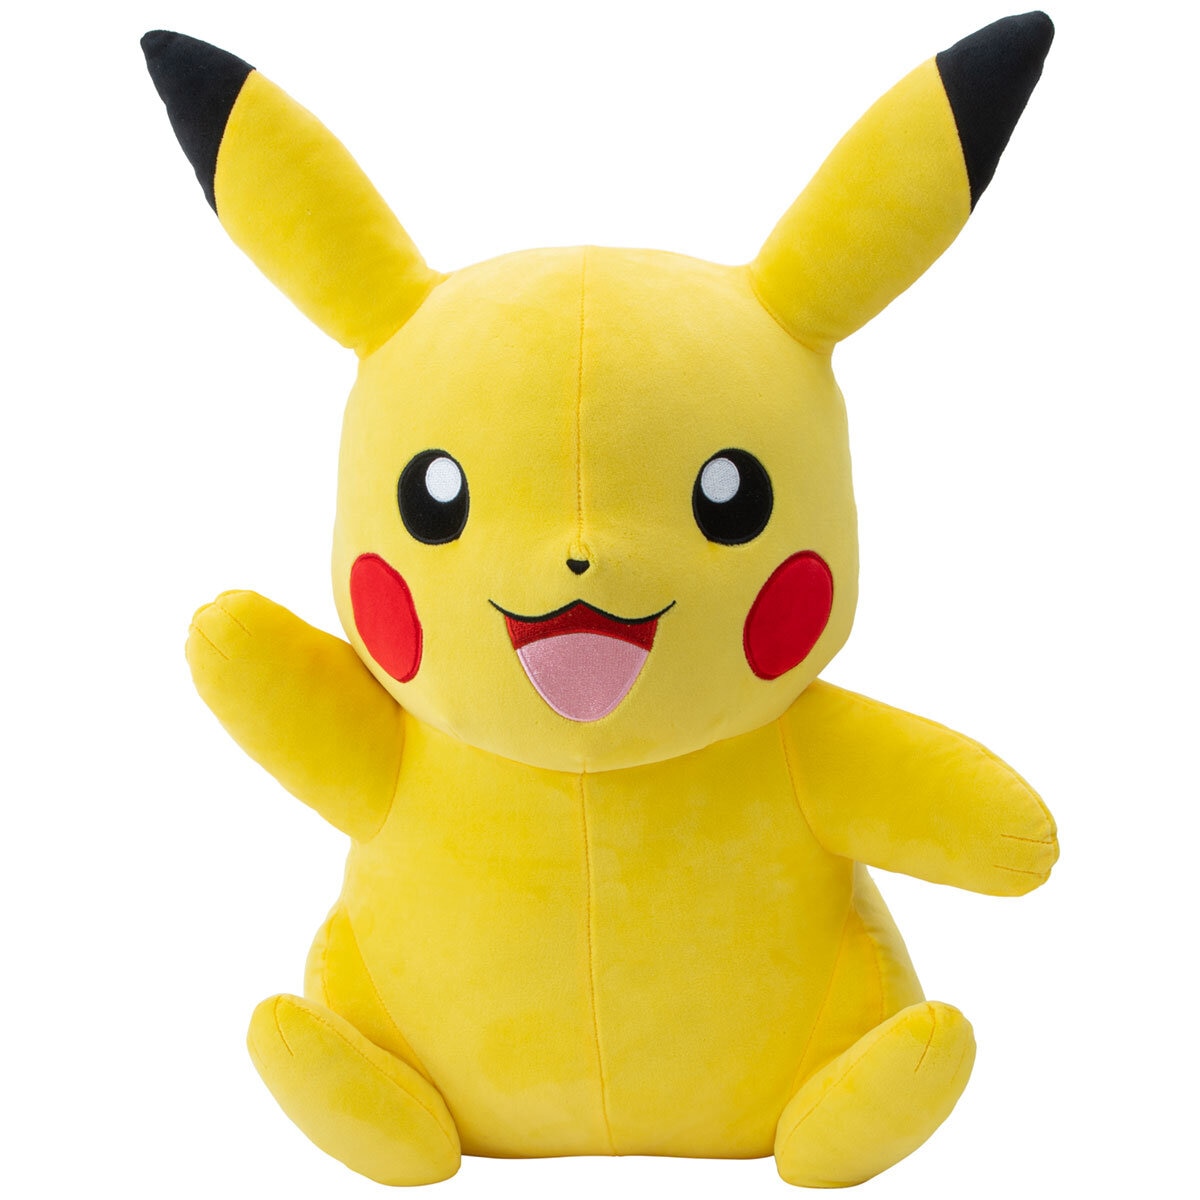 Pokemon Plush Pikachu 61cm